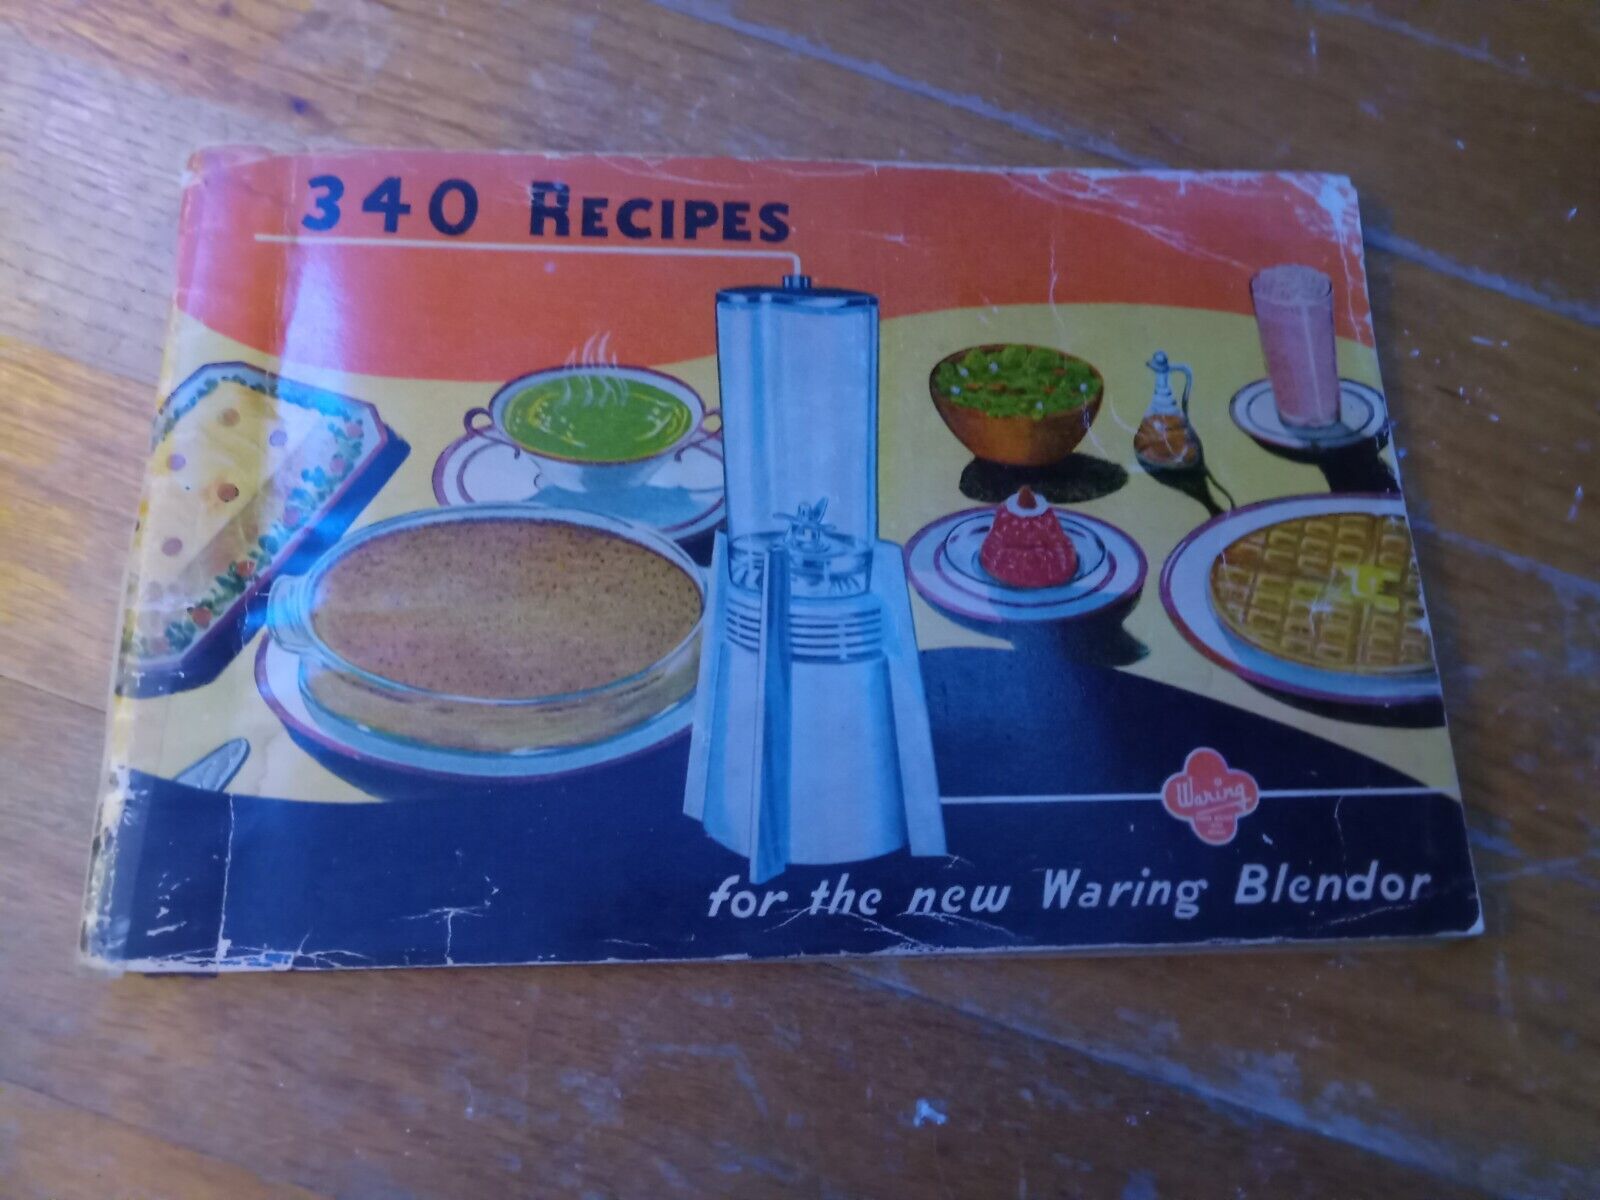 Vintage 1947 Waring Blendor 340 Recipes for the Waring Blendor